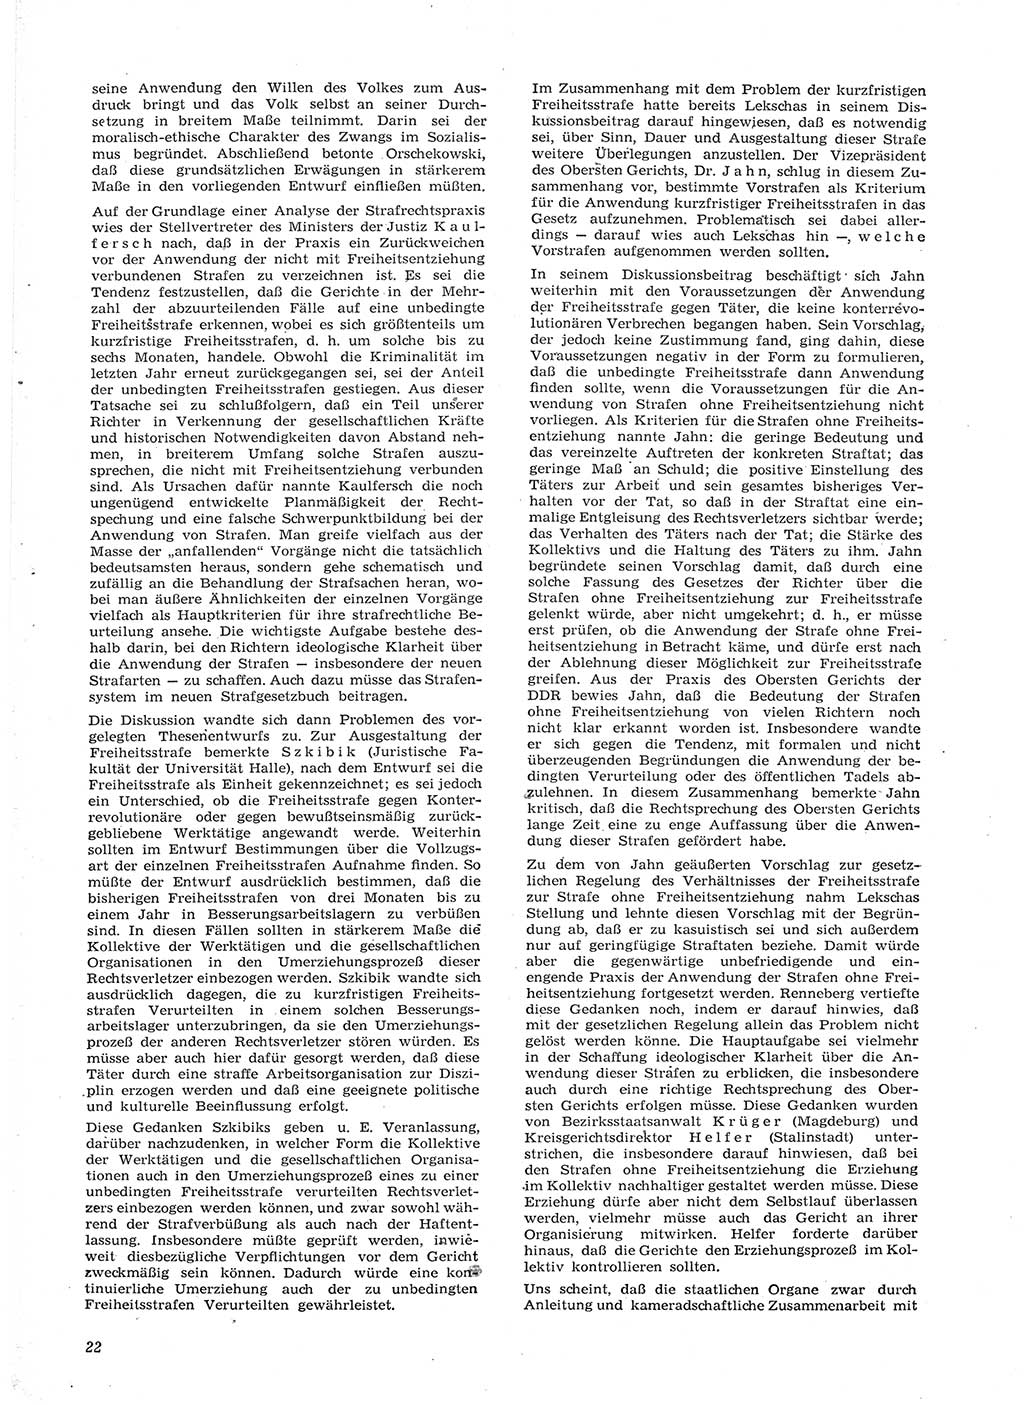 Neue Justiz (NJ), Zeitschrift für Recht und Rechtswissenschaft [Deutsche Demokratische Republik (DDR)], 15. Jahrgang 1961, Seite 22 (NJ DDR 1961, S. 22)